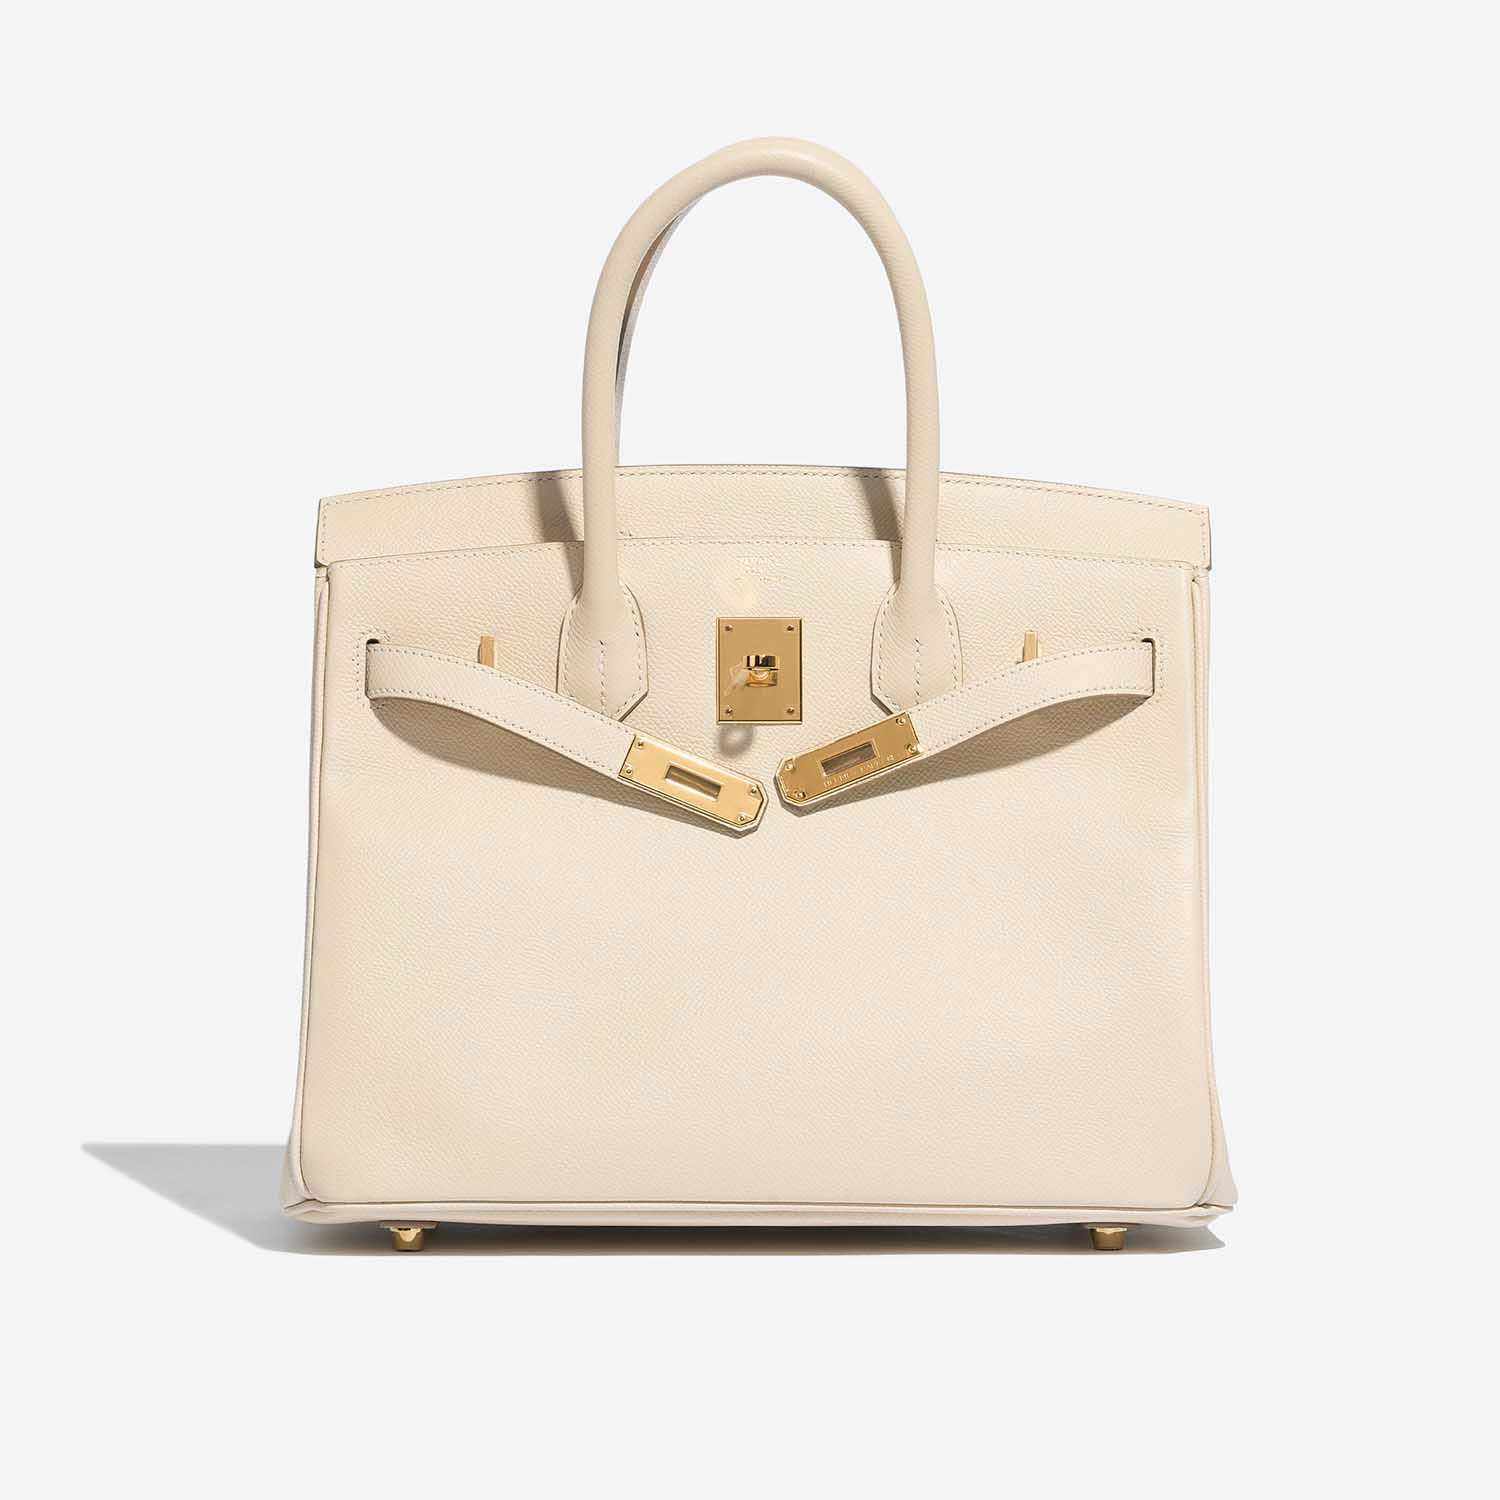 Pre-owned Hermès bag Birkin 30 Epsom Craie Beige Front Open | Sell your designer bag on Saclab.com